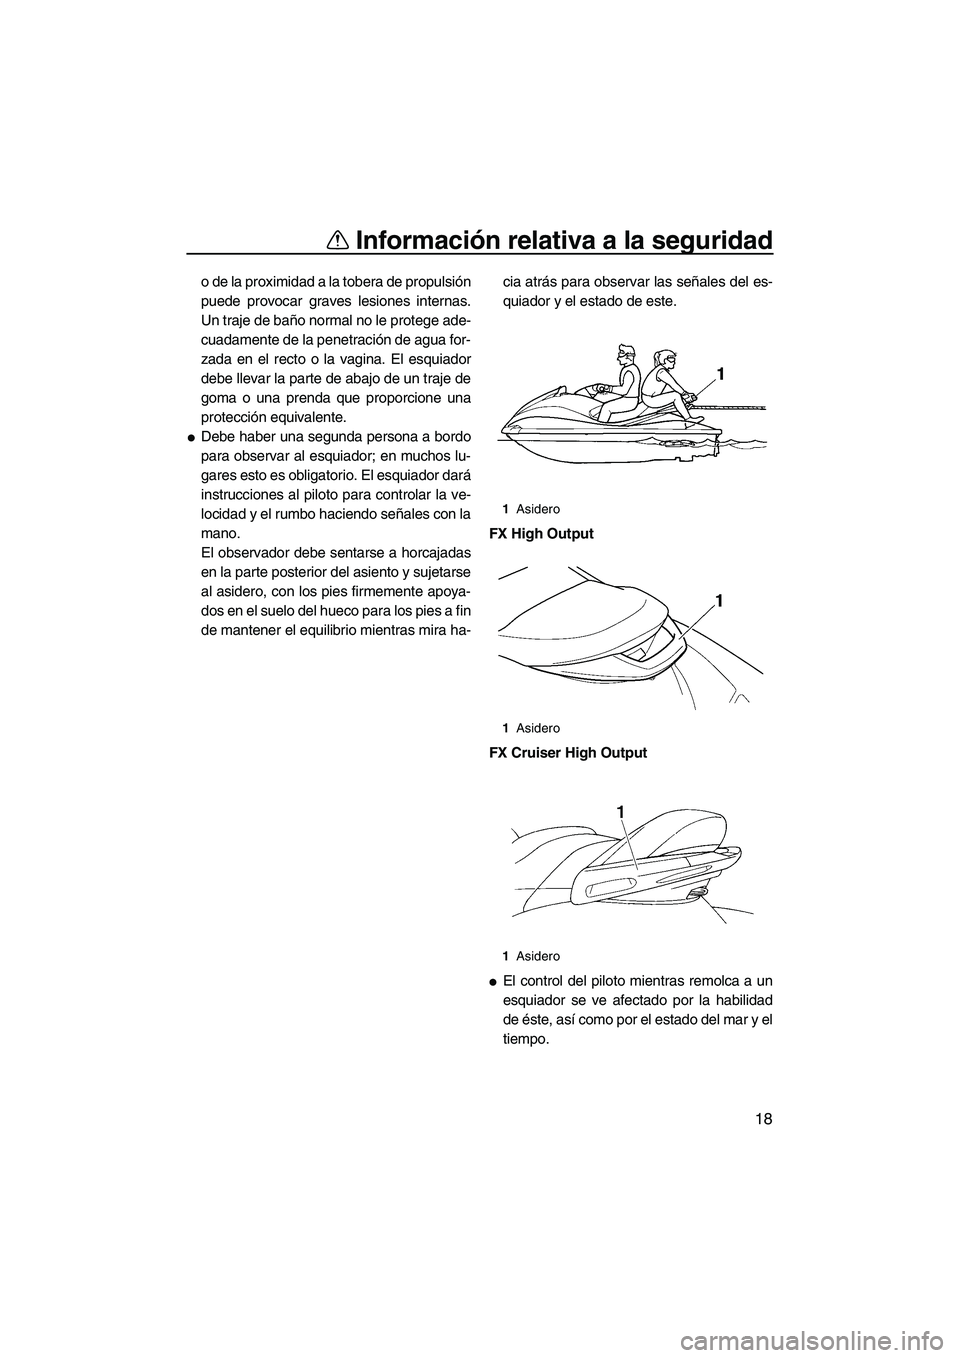 YAMAHA FX HO 2007  Manuale de Empleo (in Spanish) Información relativa a la seguridad
18
o de la proximidad a la tobera de propulsión
puede provocar graves lesiones internas.
Un traje de baño normal no le protege ade-
cuadamente de la penetración